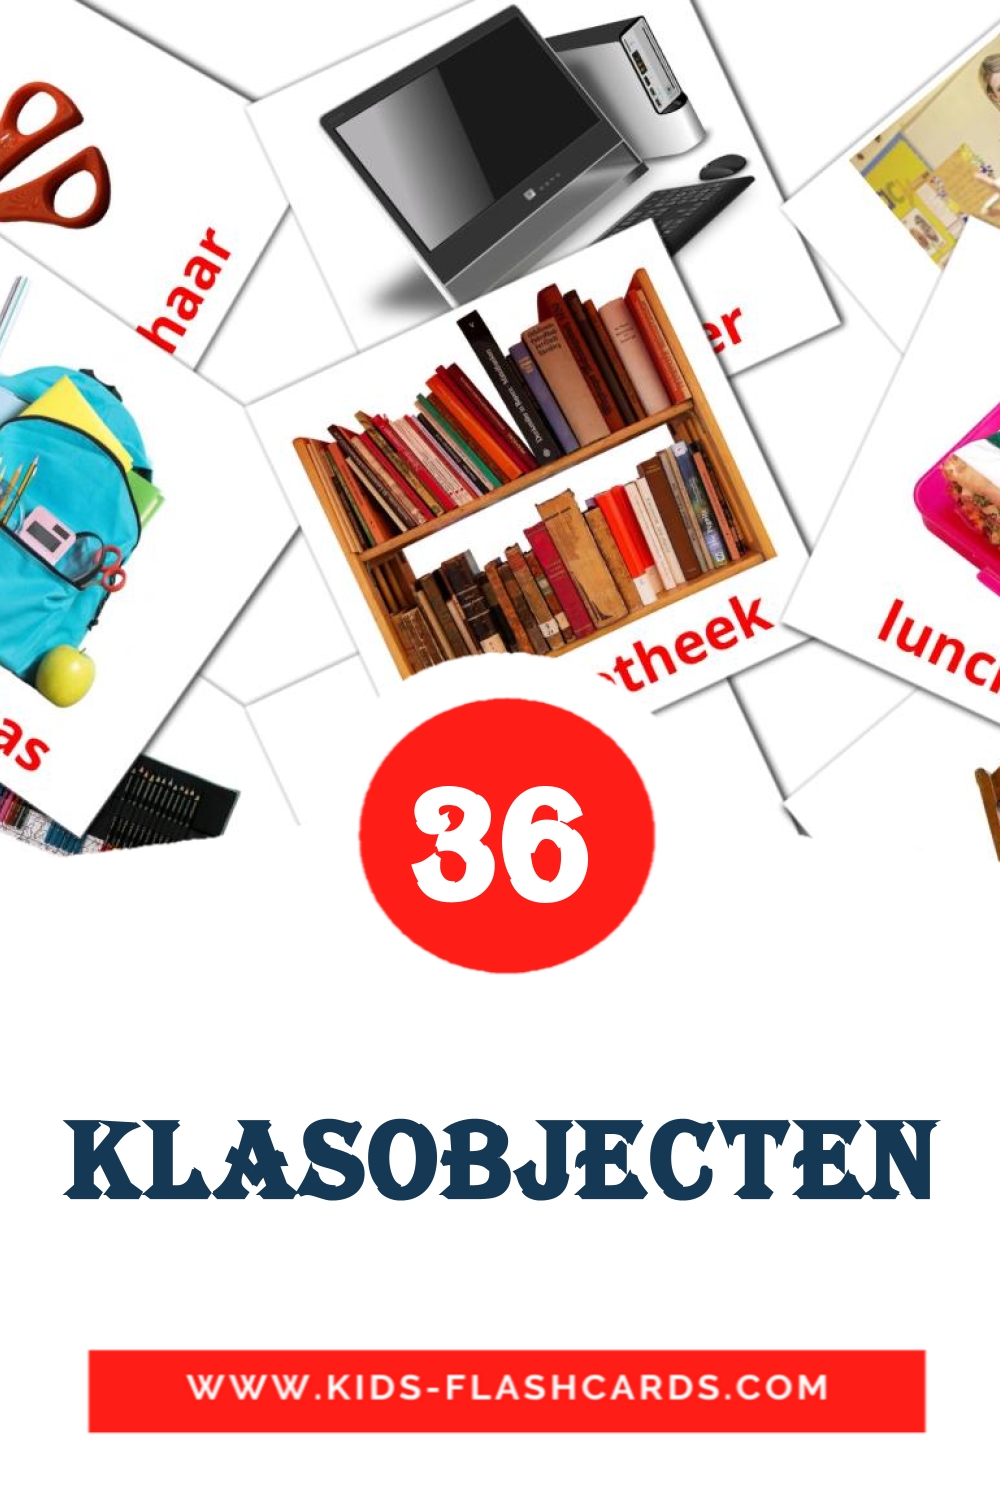 36 cartes illustrées de Klasobjecten pour la maternelle en néerlandais